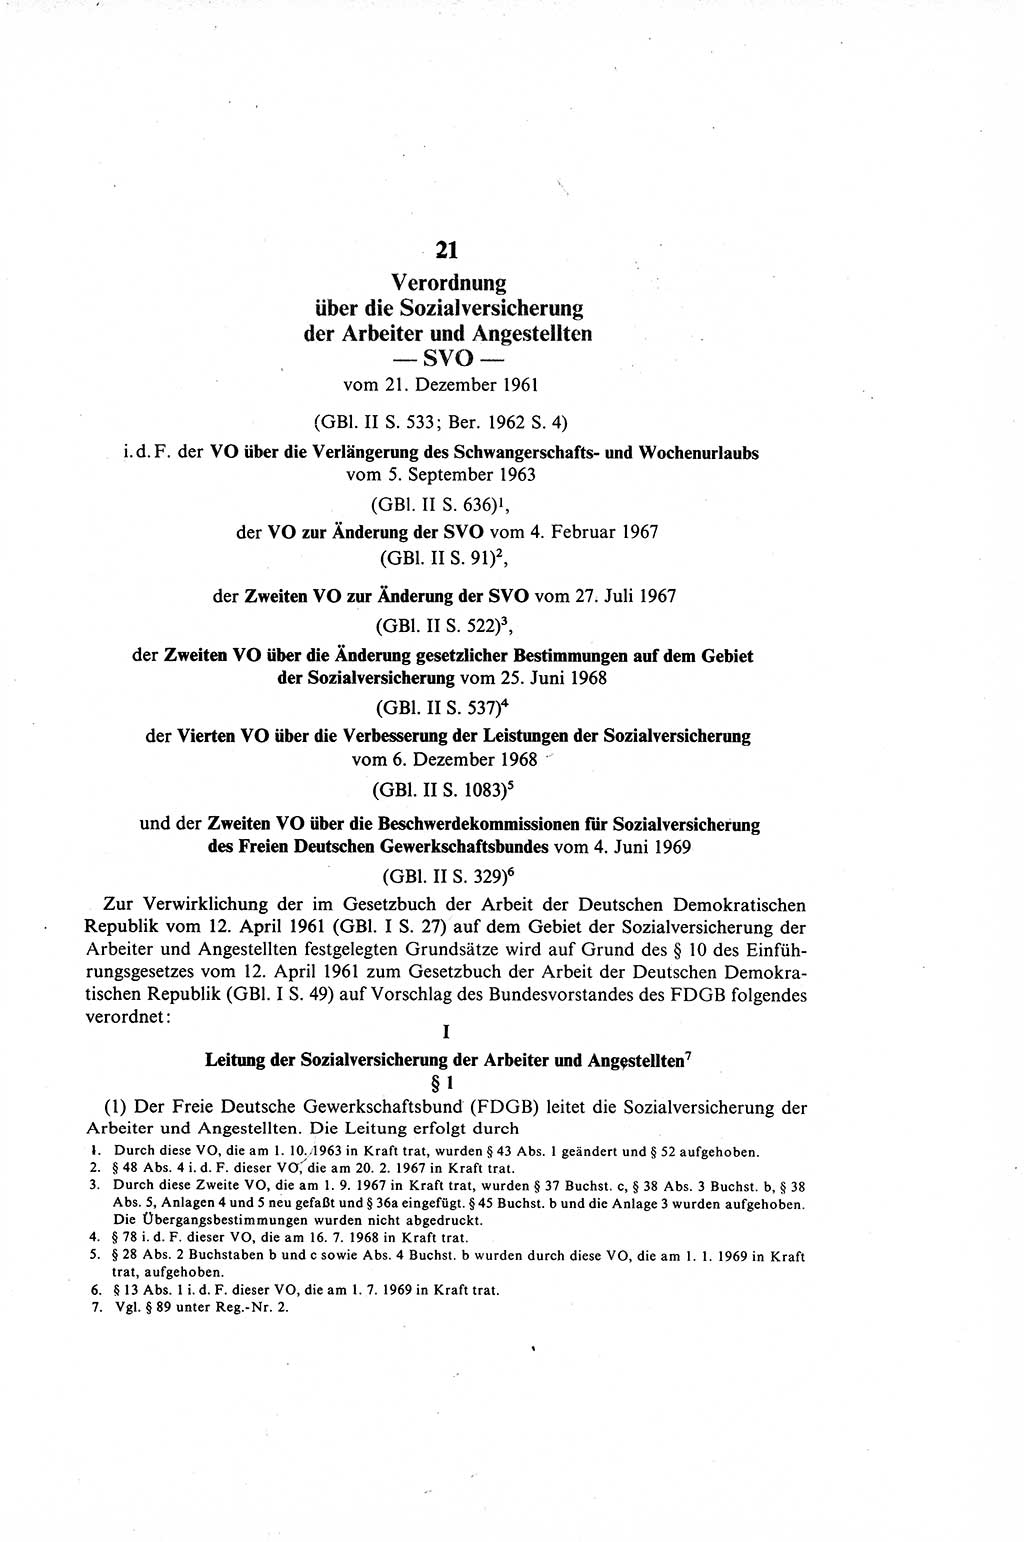 Gesetzbuch der Arbeit (GBA) und andere ausgewählte rechtliche Bestimmungen [Deutsche Demokratische Republik (DDR)] 1968, Seite 269 (GBA DDR 1968, S. 269)